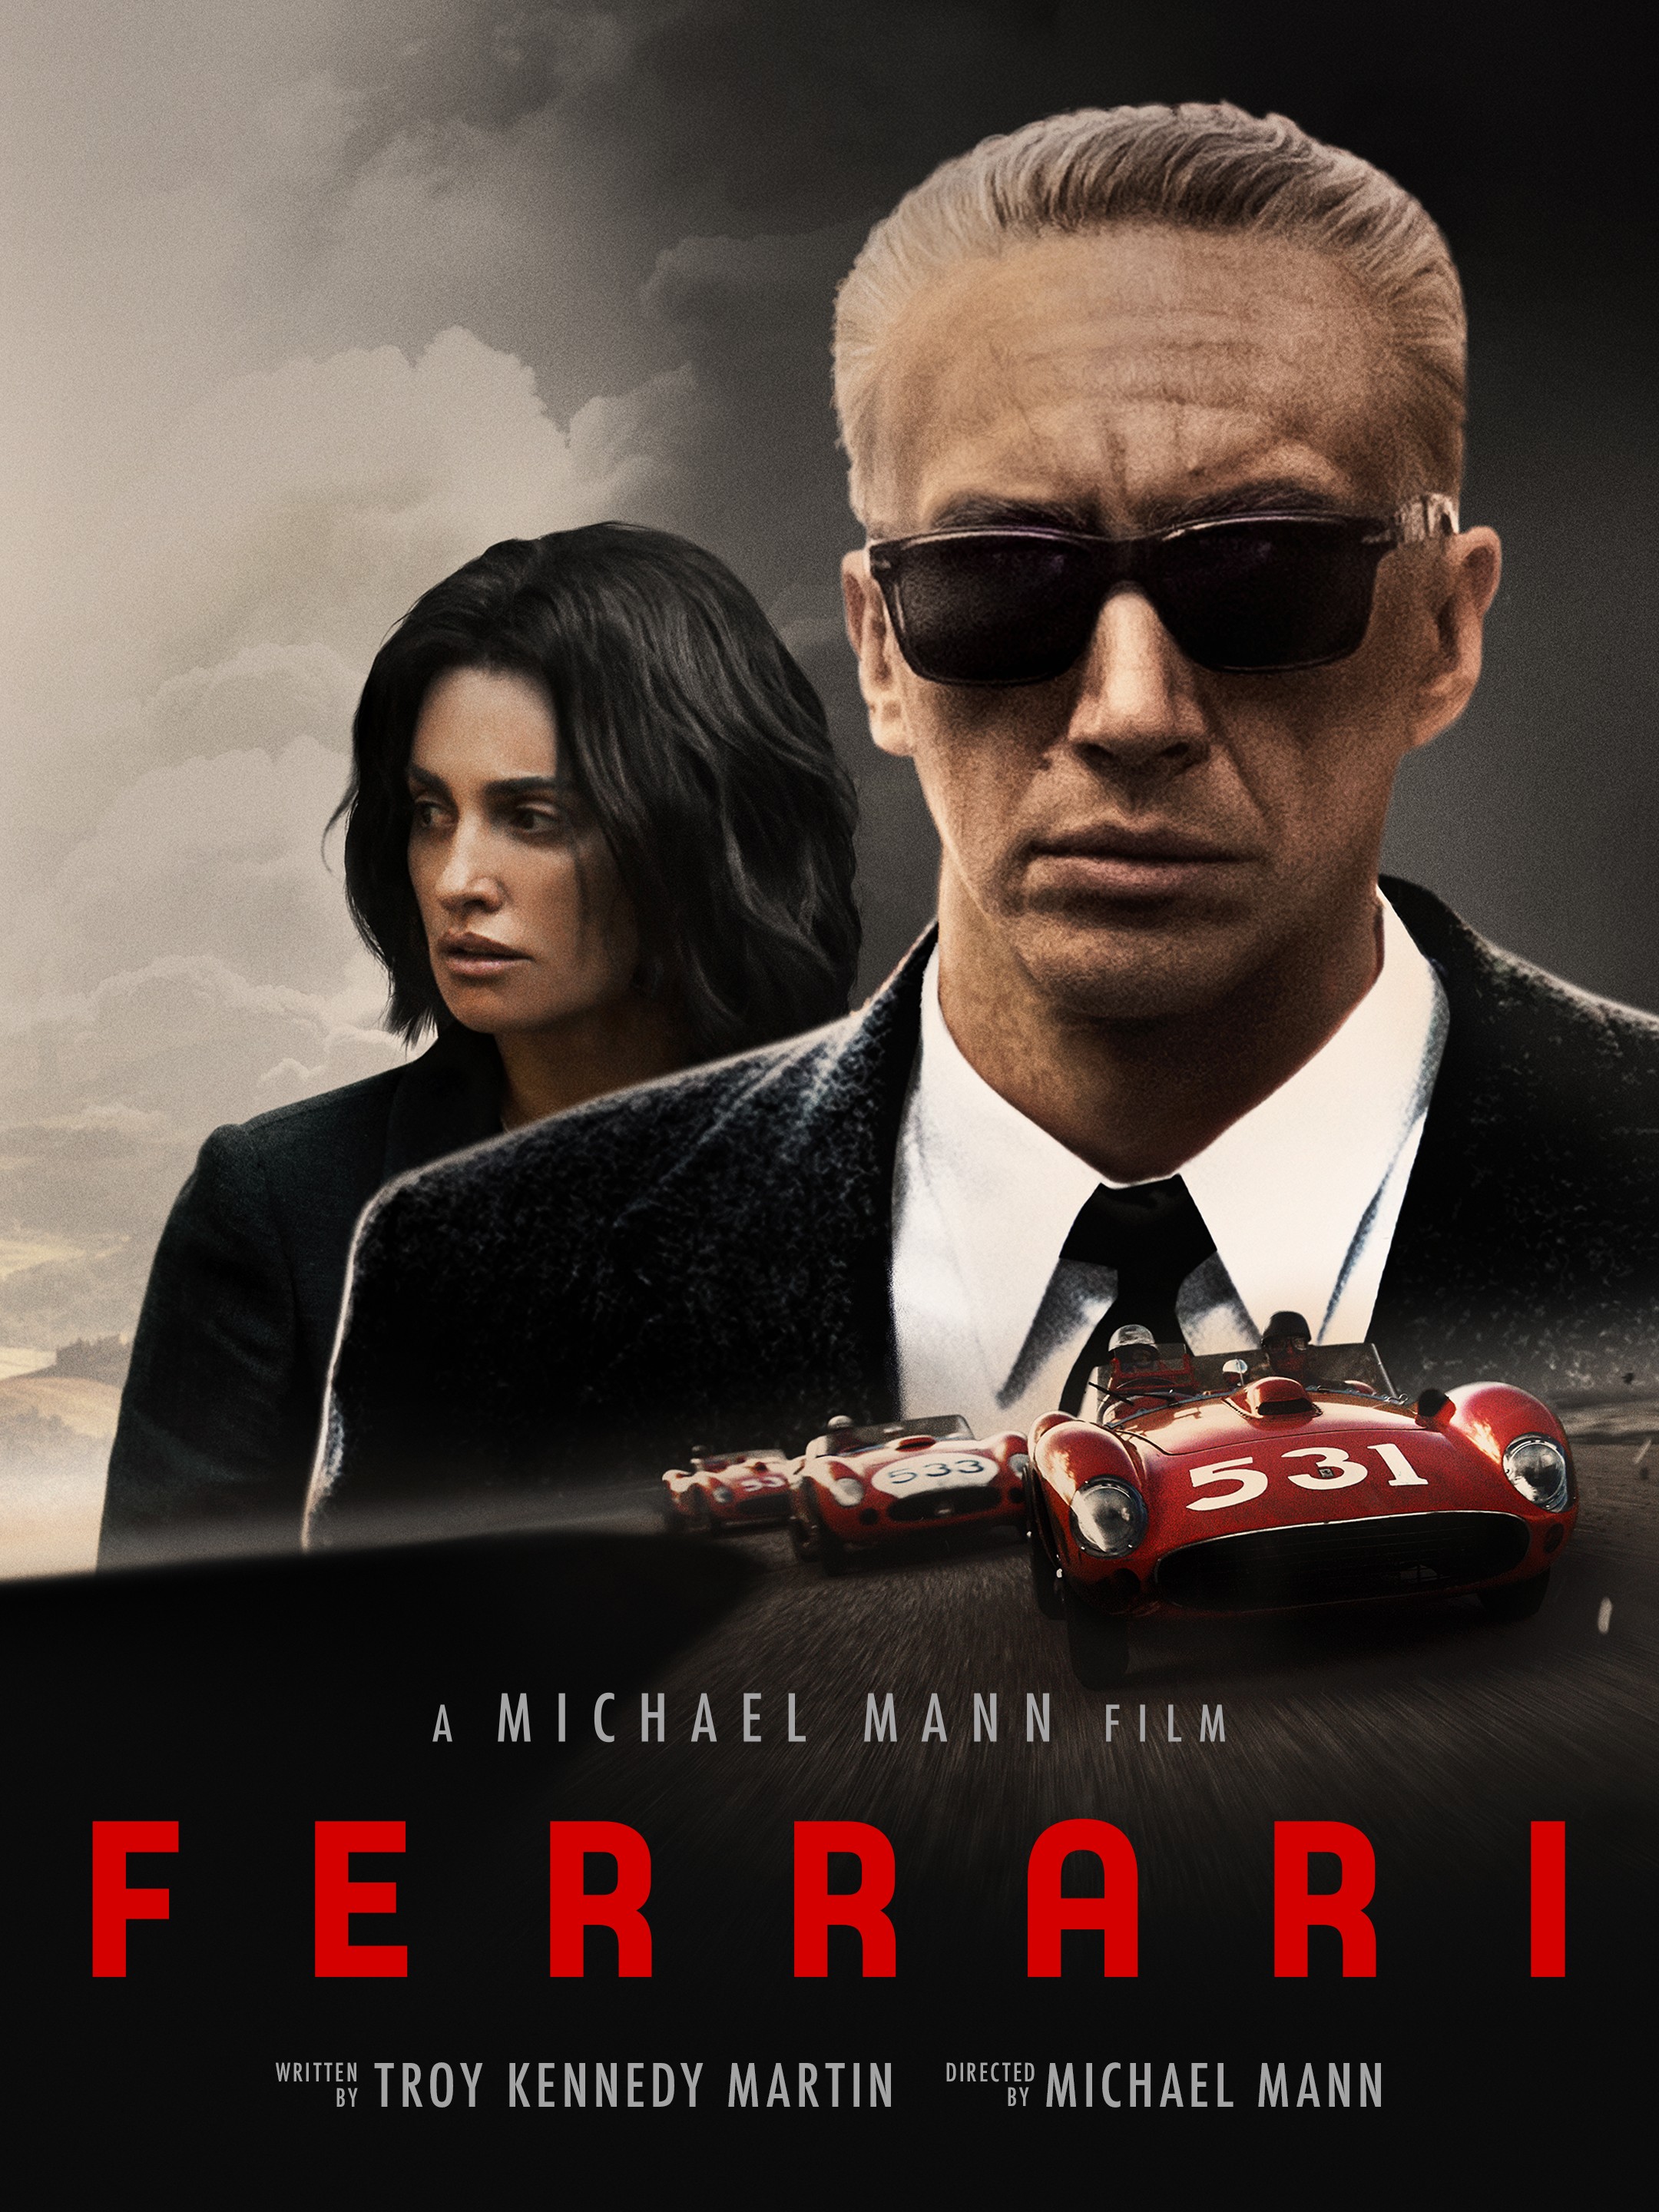 Cover Art for "Ferrari"